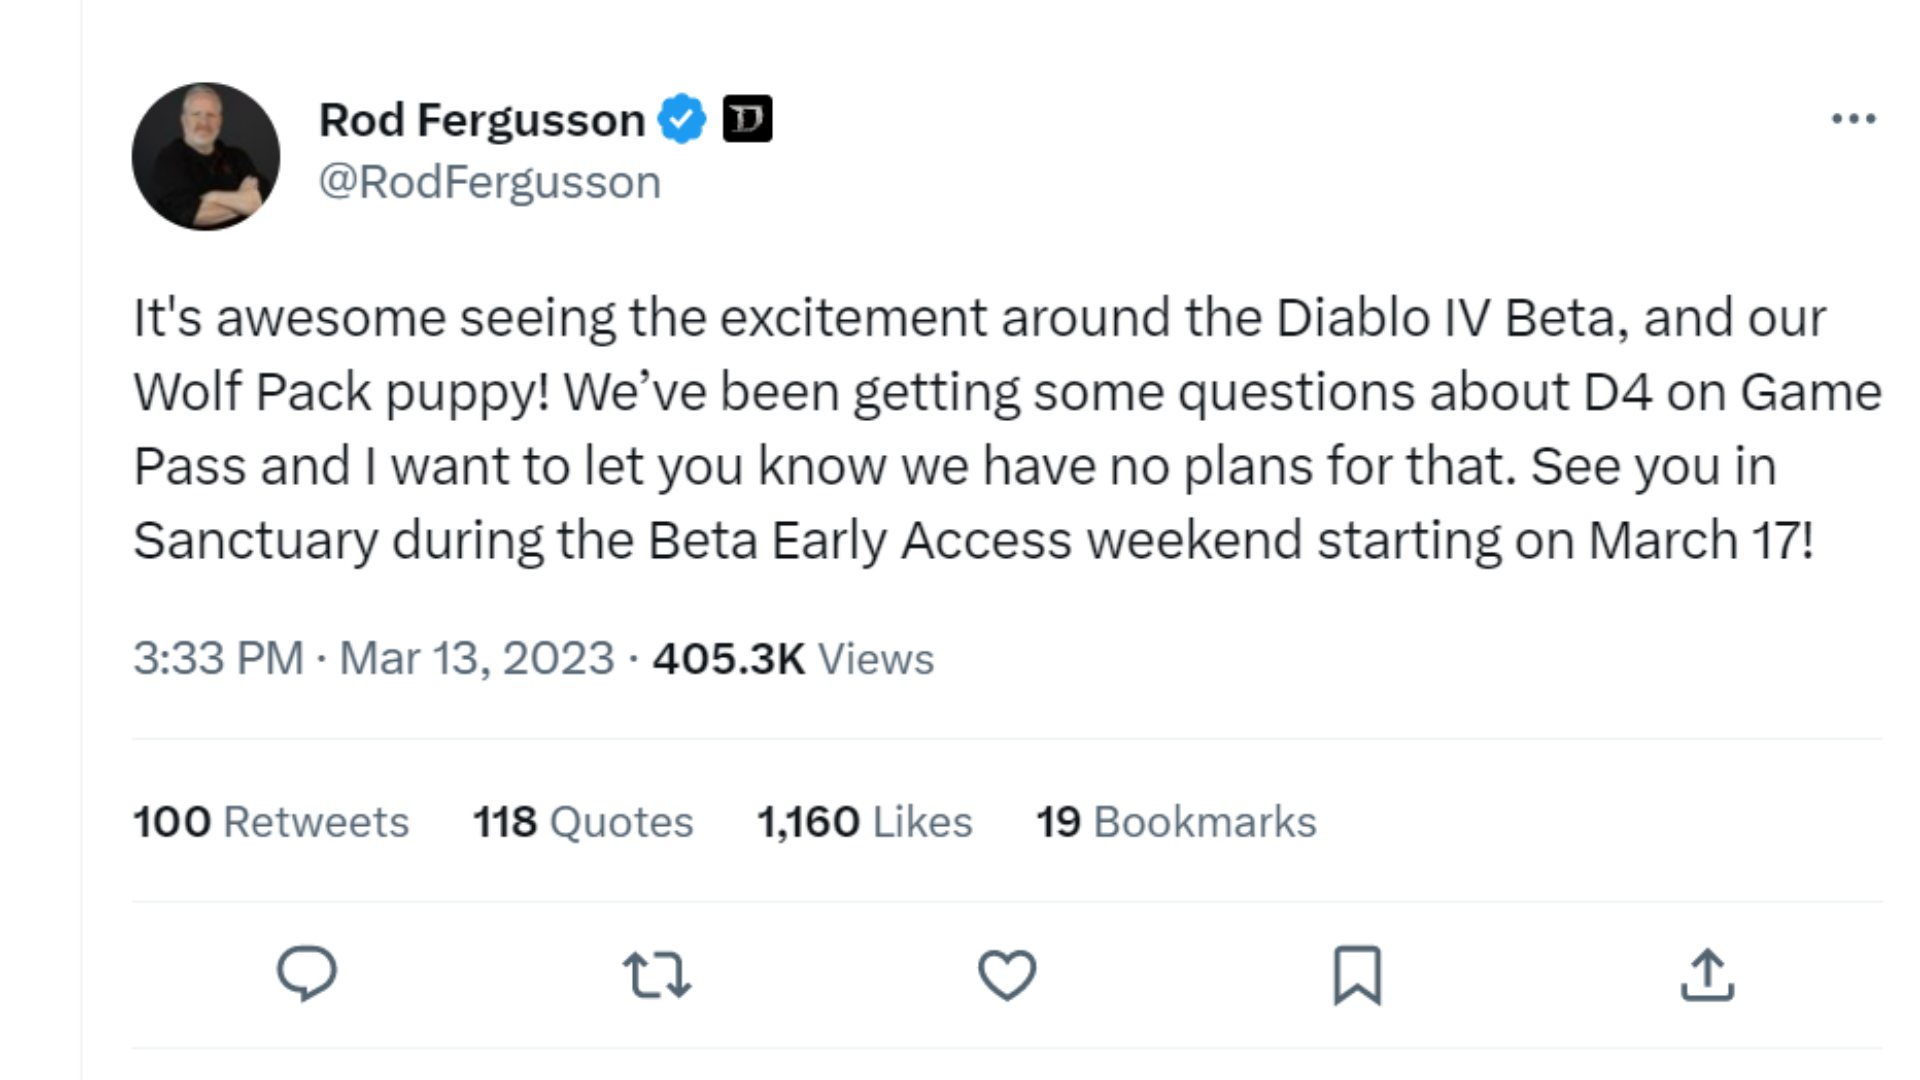 Rod Fergusson confirmant qu'il n'y a pas de plans pour Diablo 4 sur Game Pass